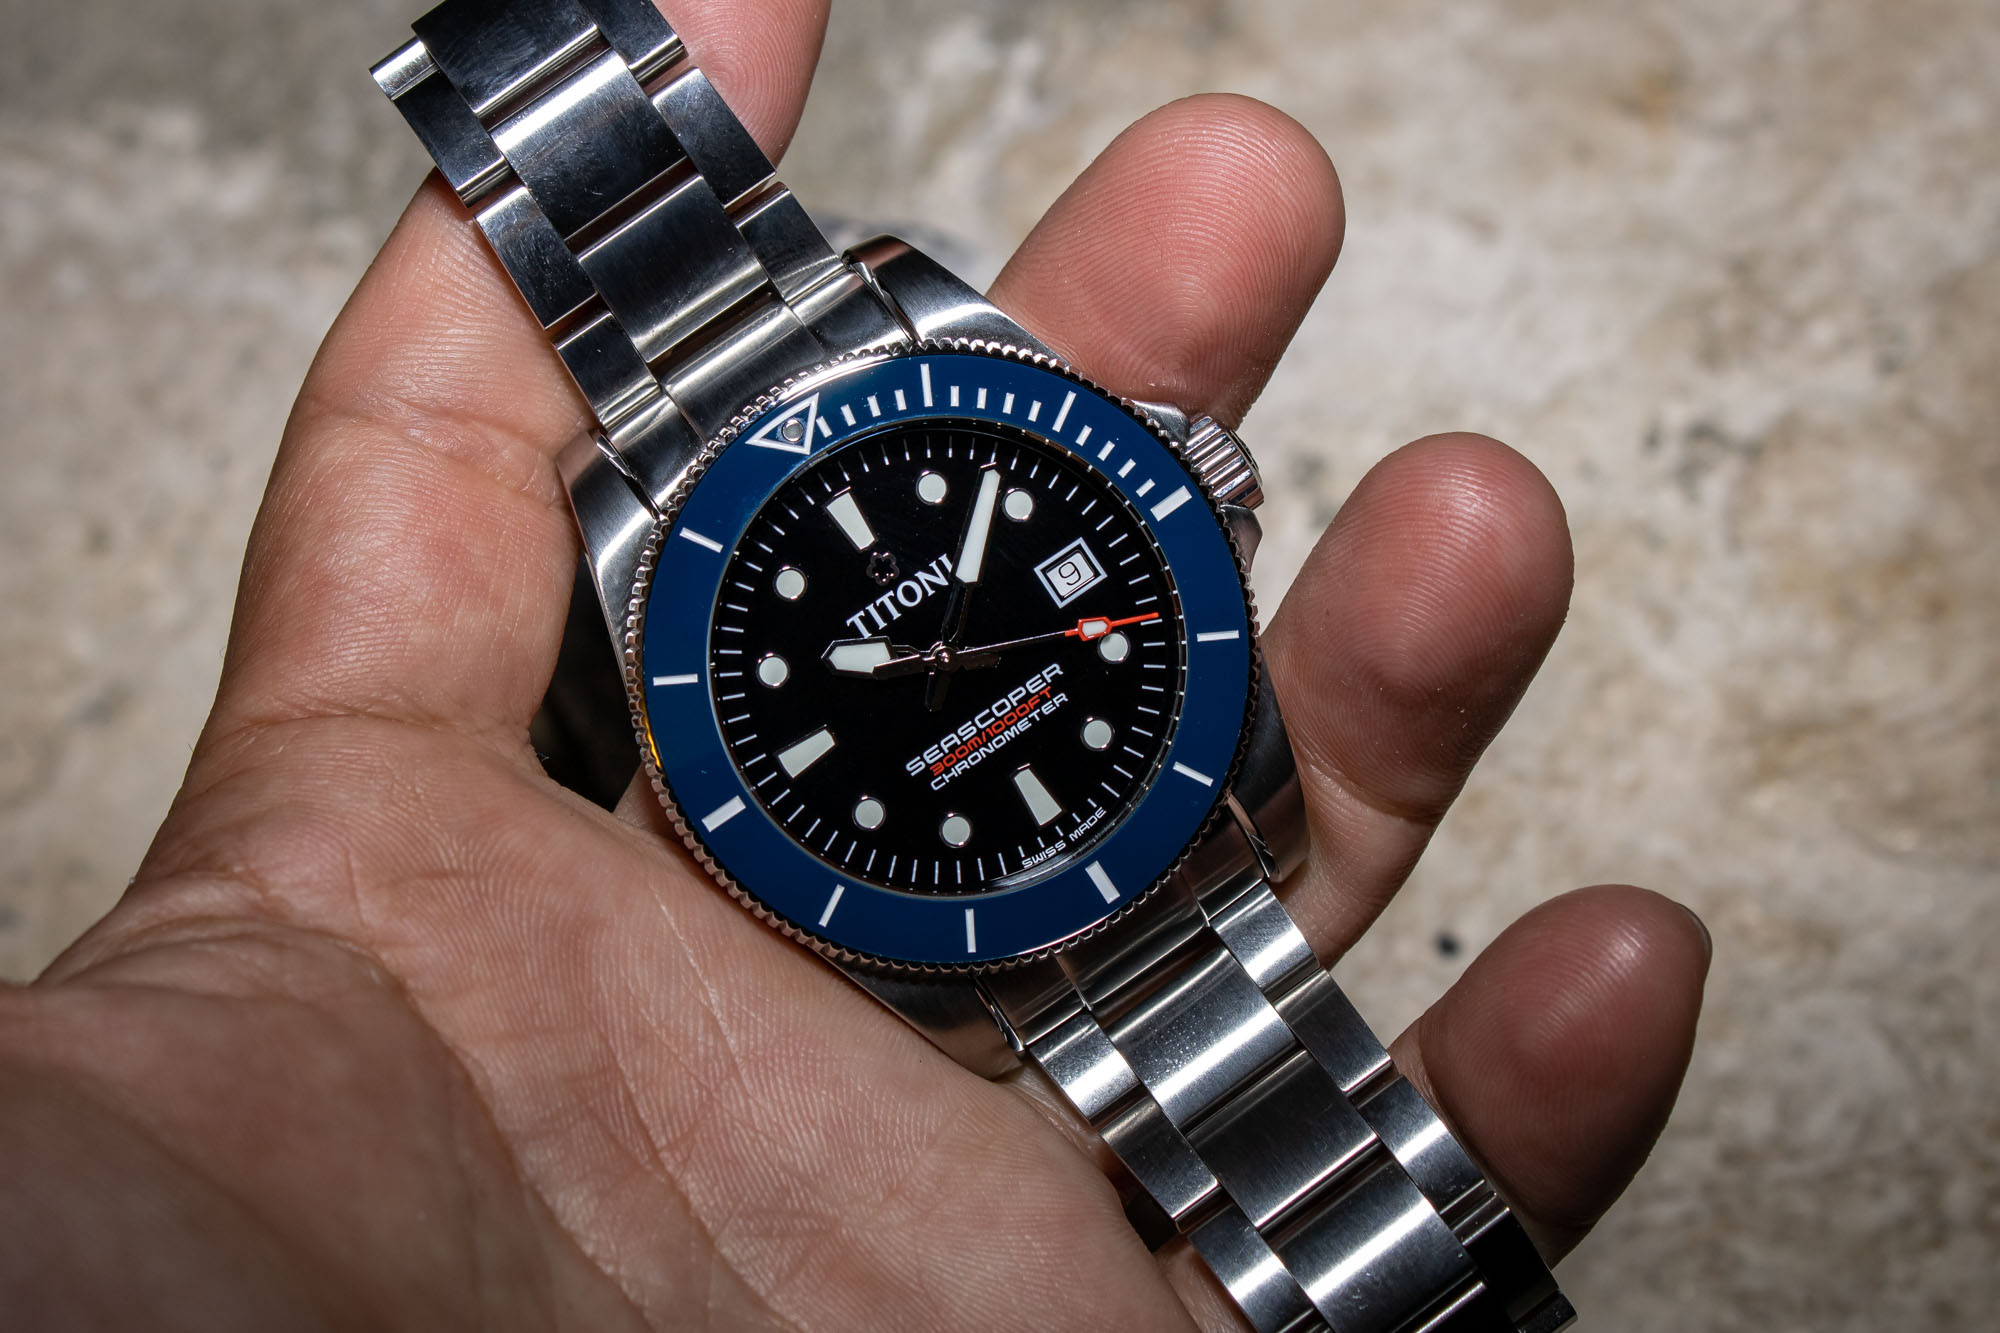 Дайверские наручные часы: TITONI Seascoper 300